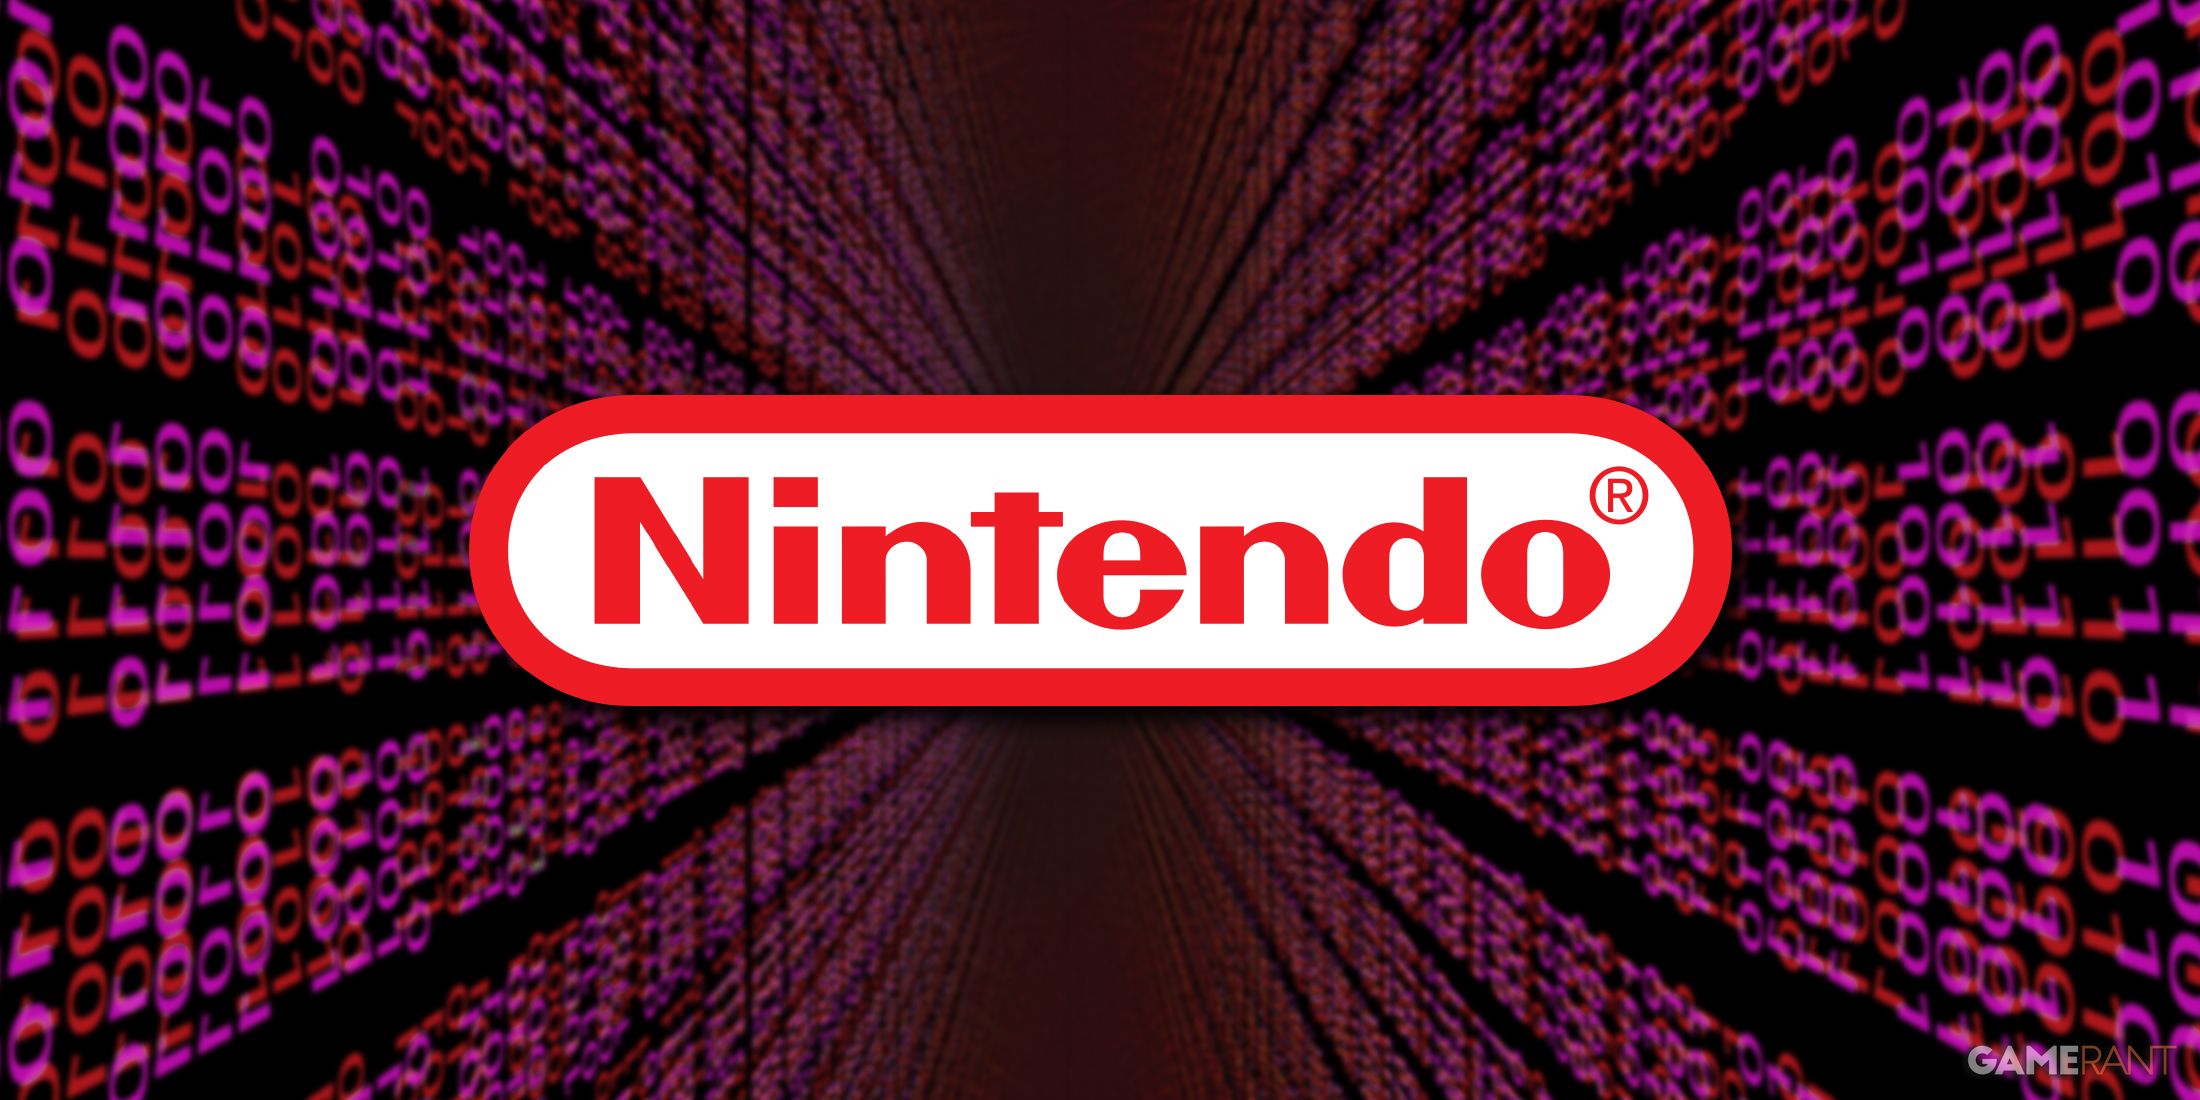 Nintendo address leaks